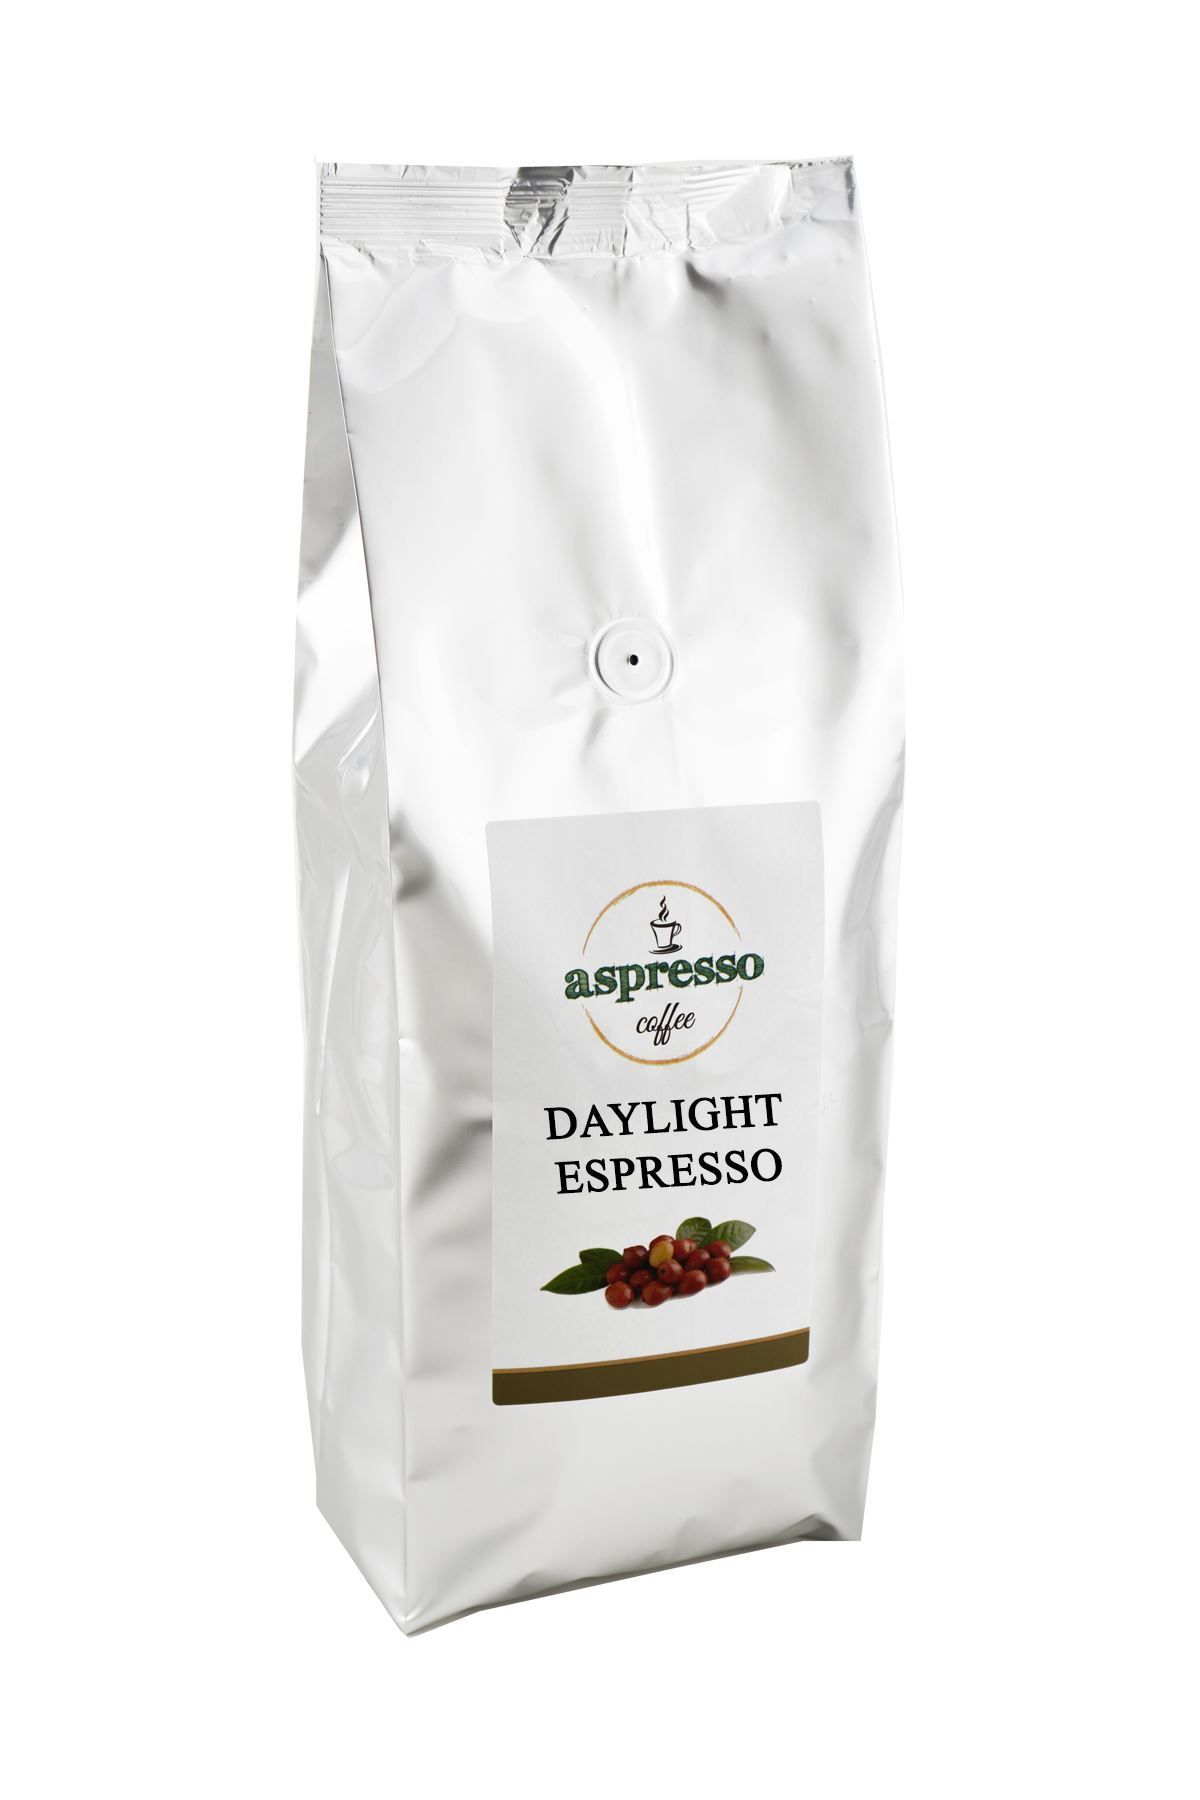 aspresso Daylight Espresso Çekirdek 1000 Gr.